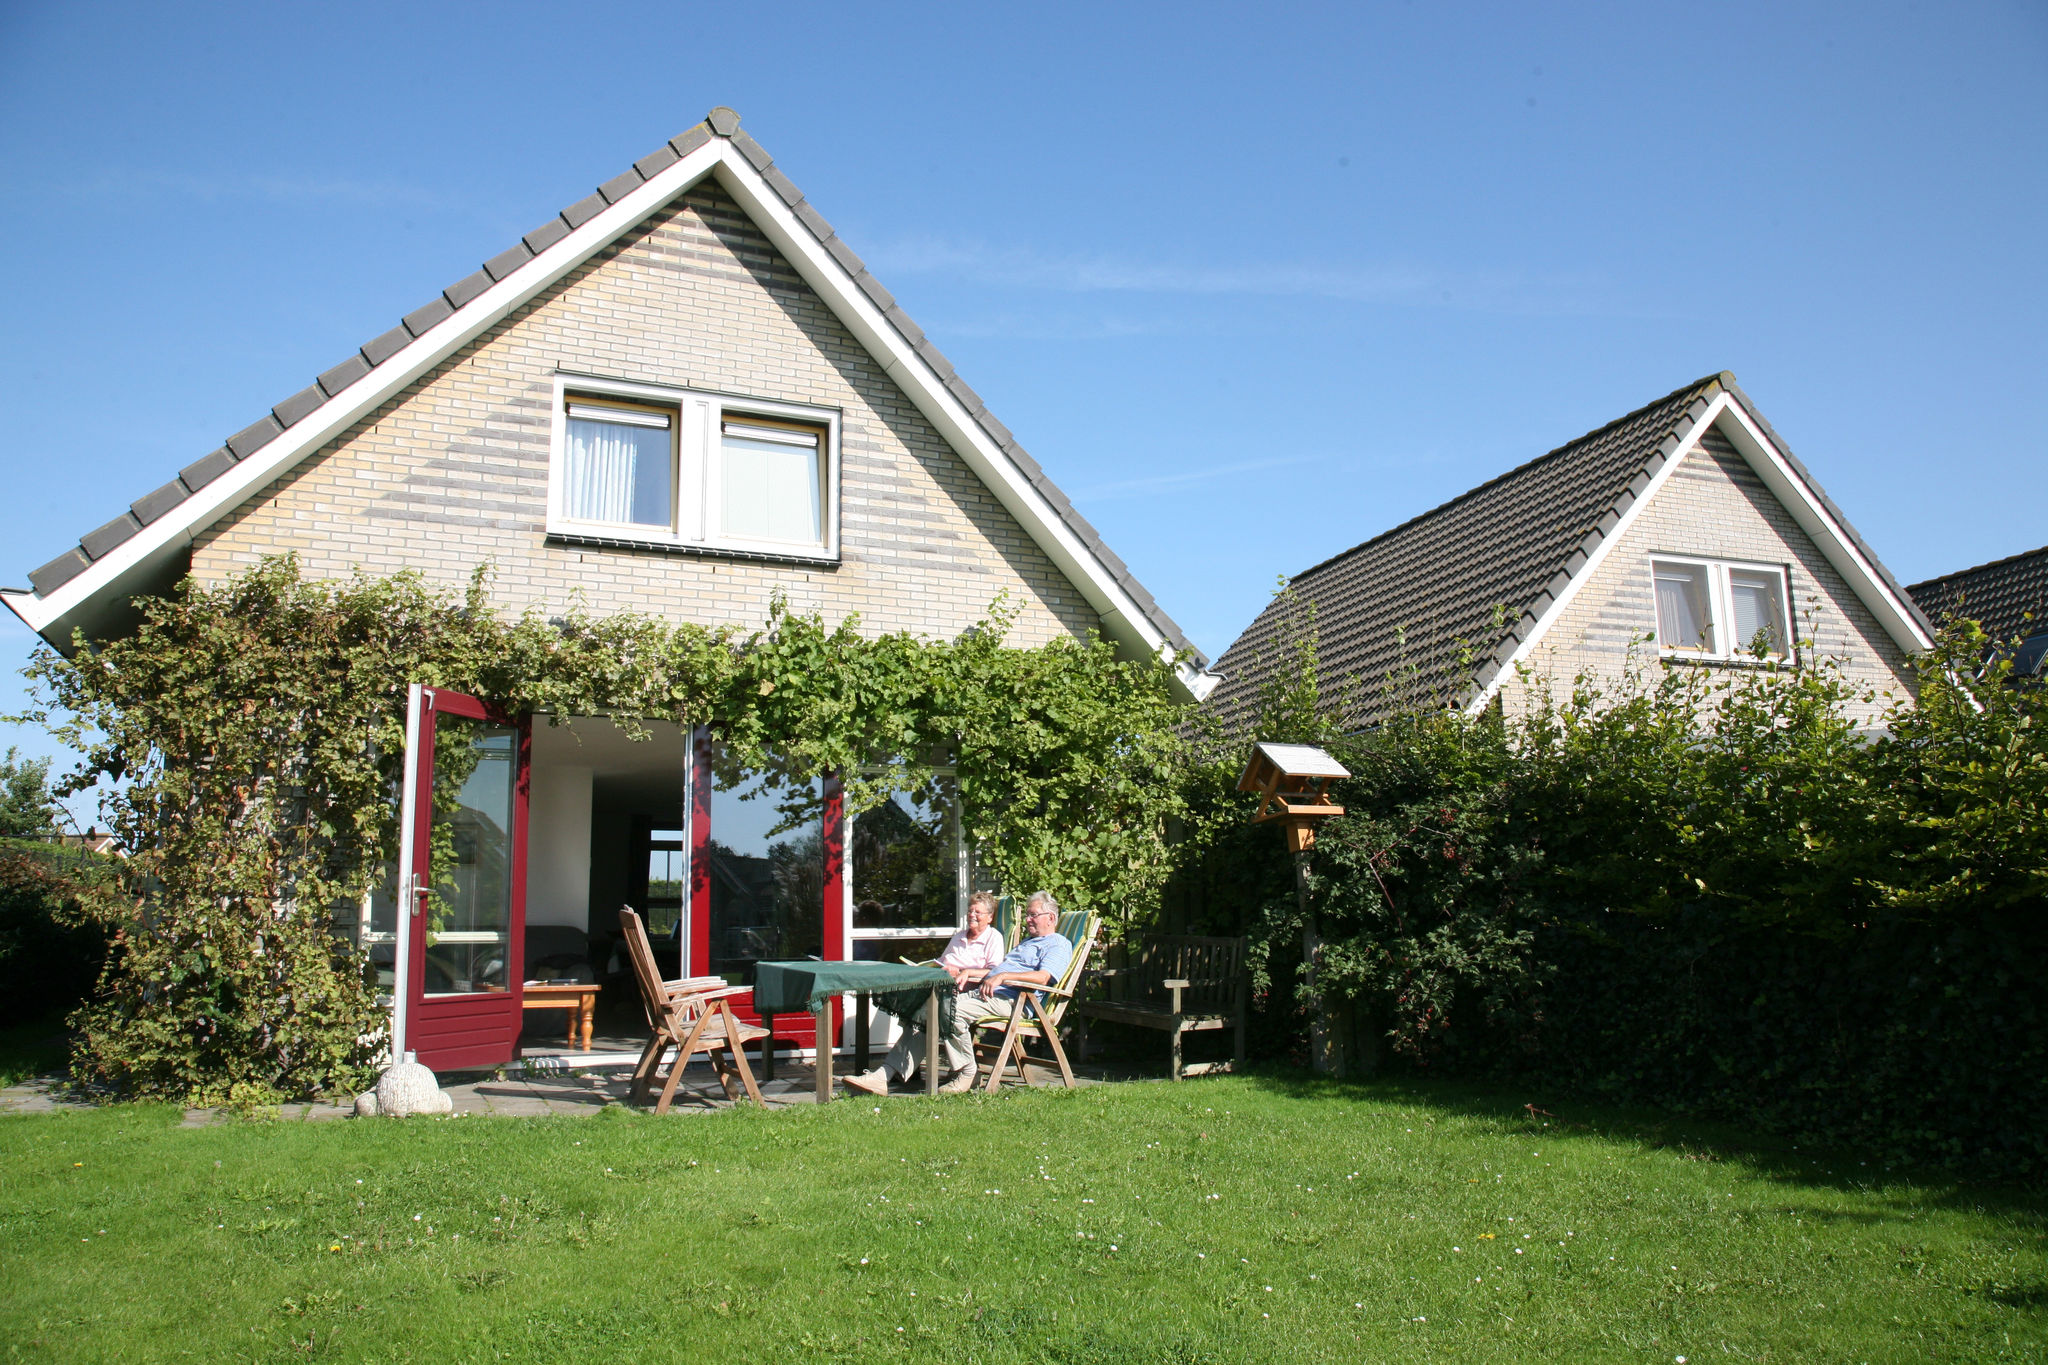 Schönes Haus mit Steg in der Nähe des IJsselmeeres